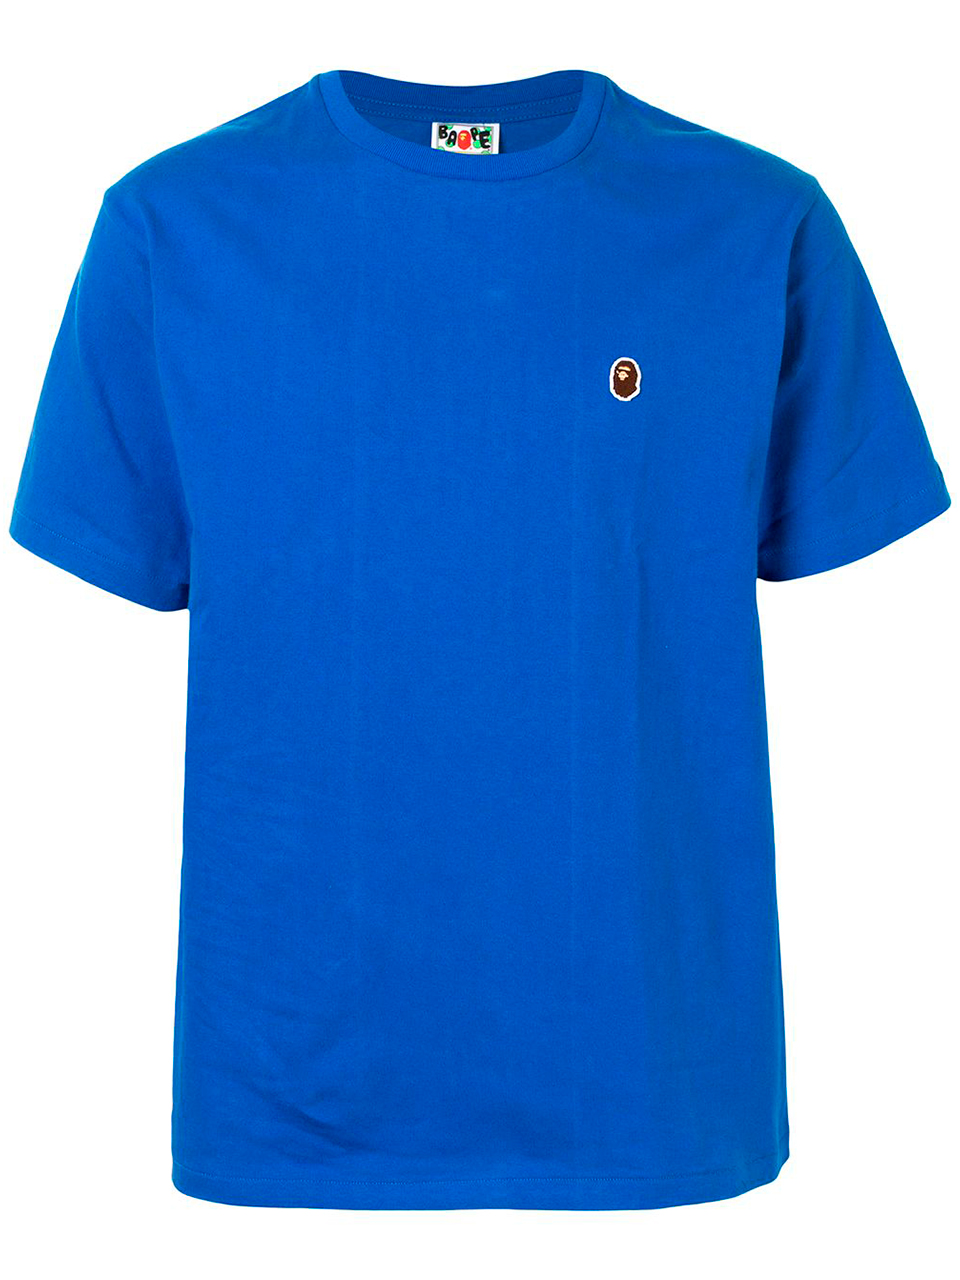 Imagem de: Camiseta BAPE Azul com Logo Pequeno